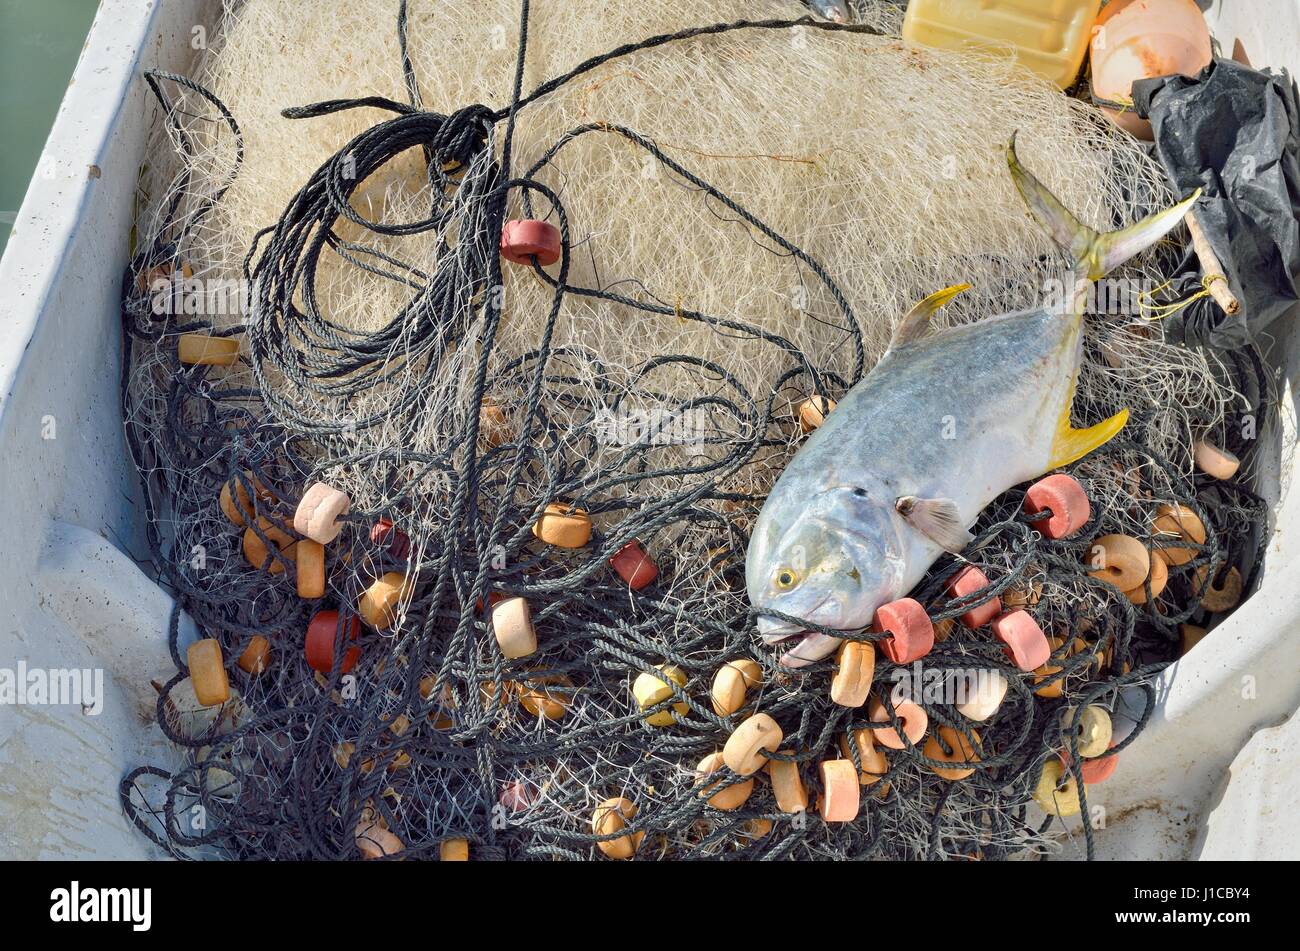 Yellowfin tuna (Thunnus albacares) lying on fishing net in boat, El Cujo, Yukatan, Mexico Stock Photo